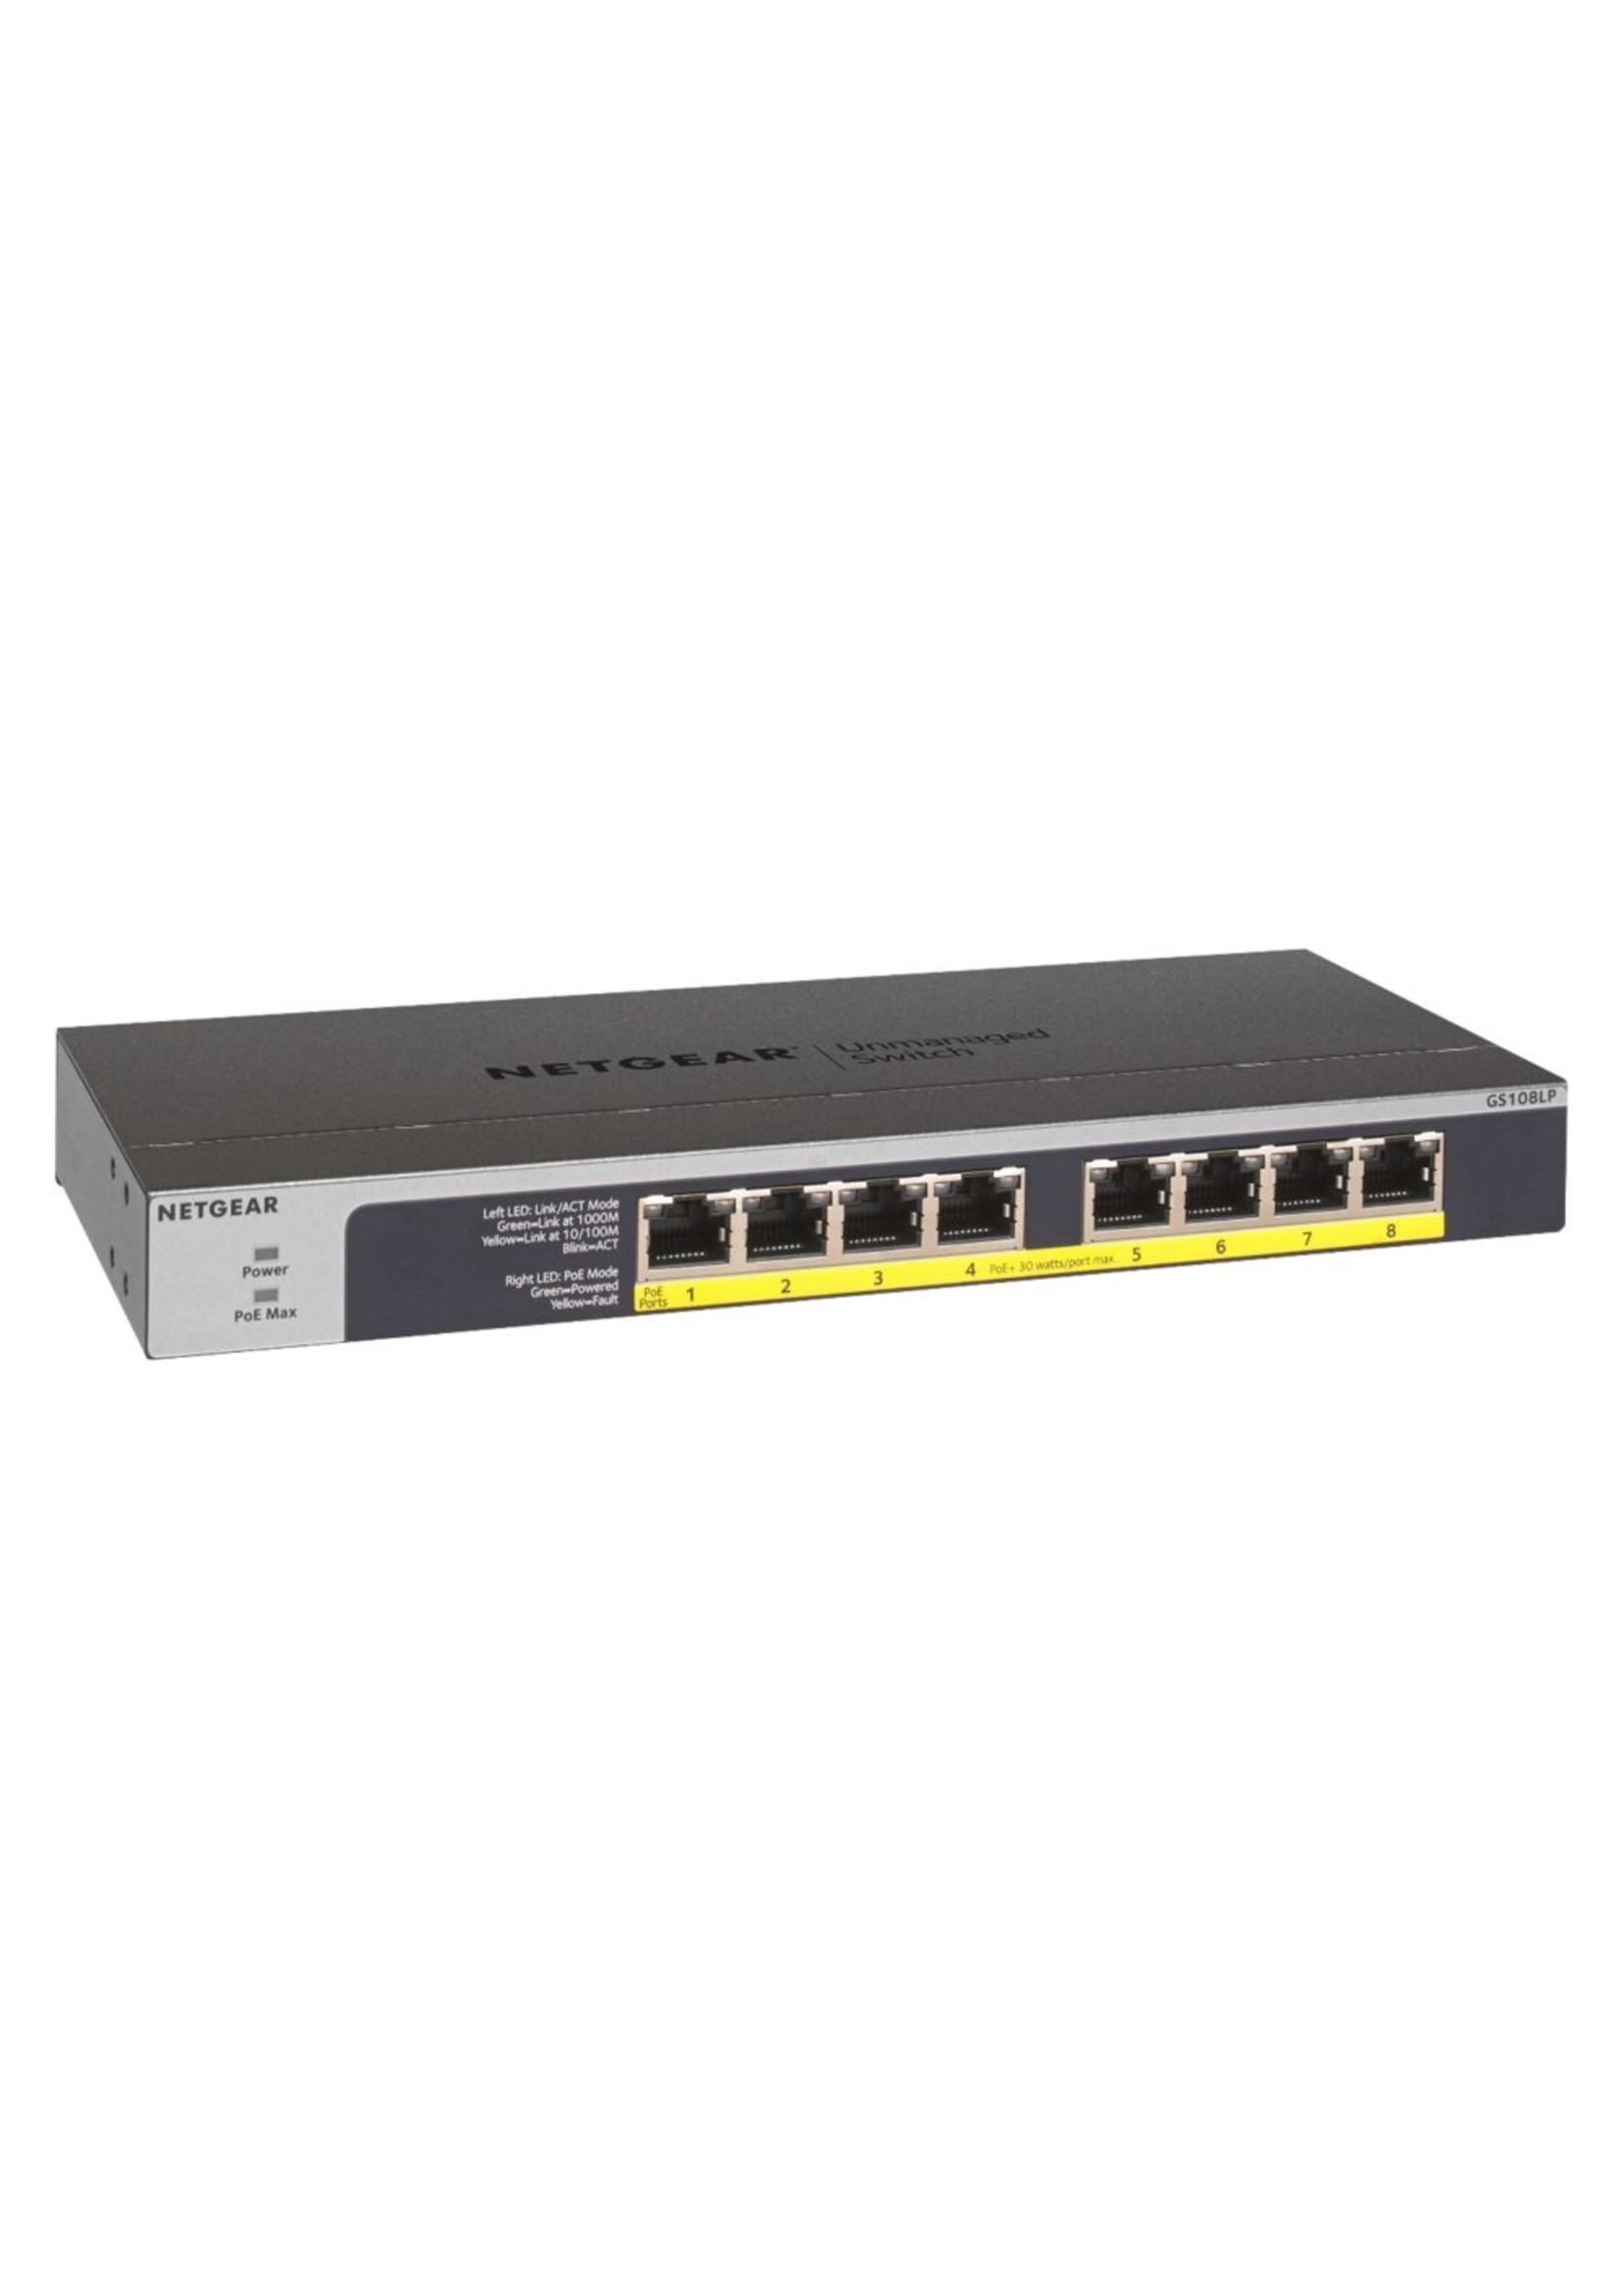 Netgear NETGEAR GS108LP Unmanaged Gigabit Ethernet (10/100/1000) Power over Ethernet (PoE) 1U Zwart, Grijs